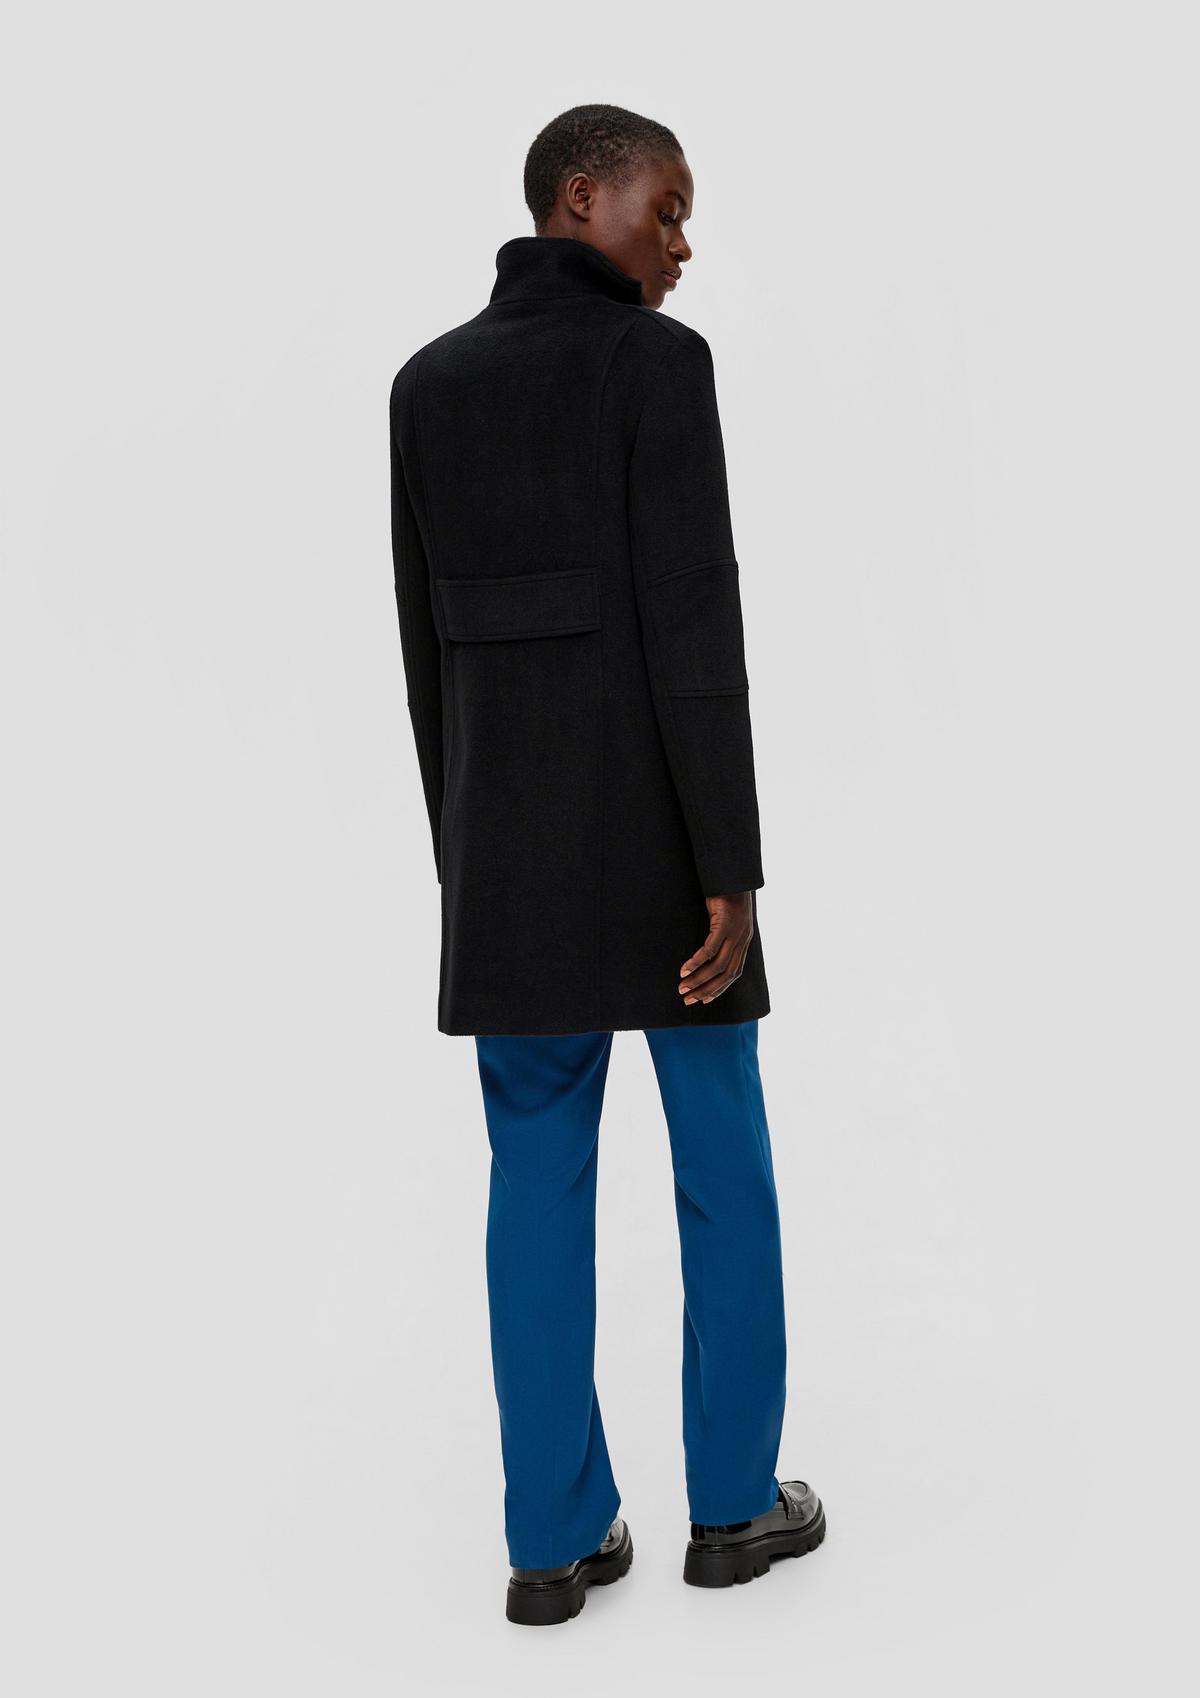 Wool blend coat - black | s.Oliver